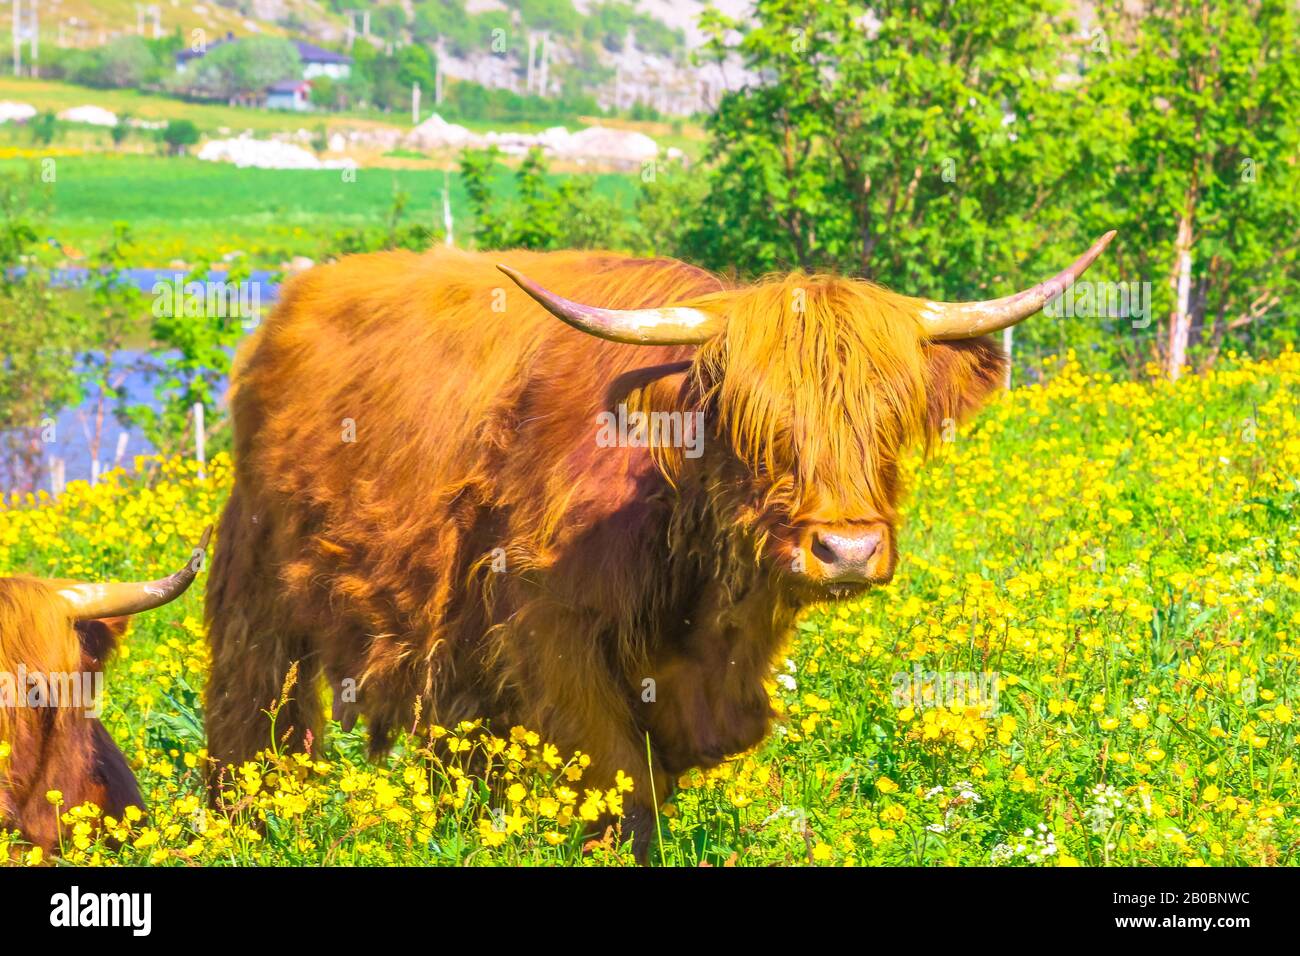 Primer plano del espécimen adulto de una vaca roja de las tierras altas de Escocia, sentada en un campo florido en primavera en el territorio de Noruega. Foto de stock